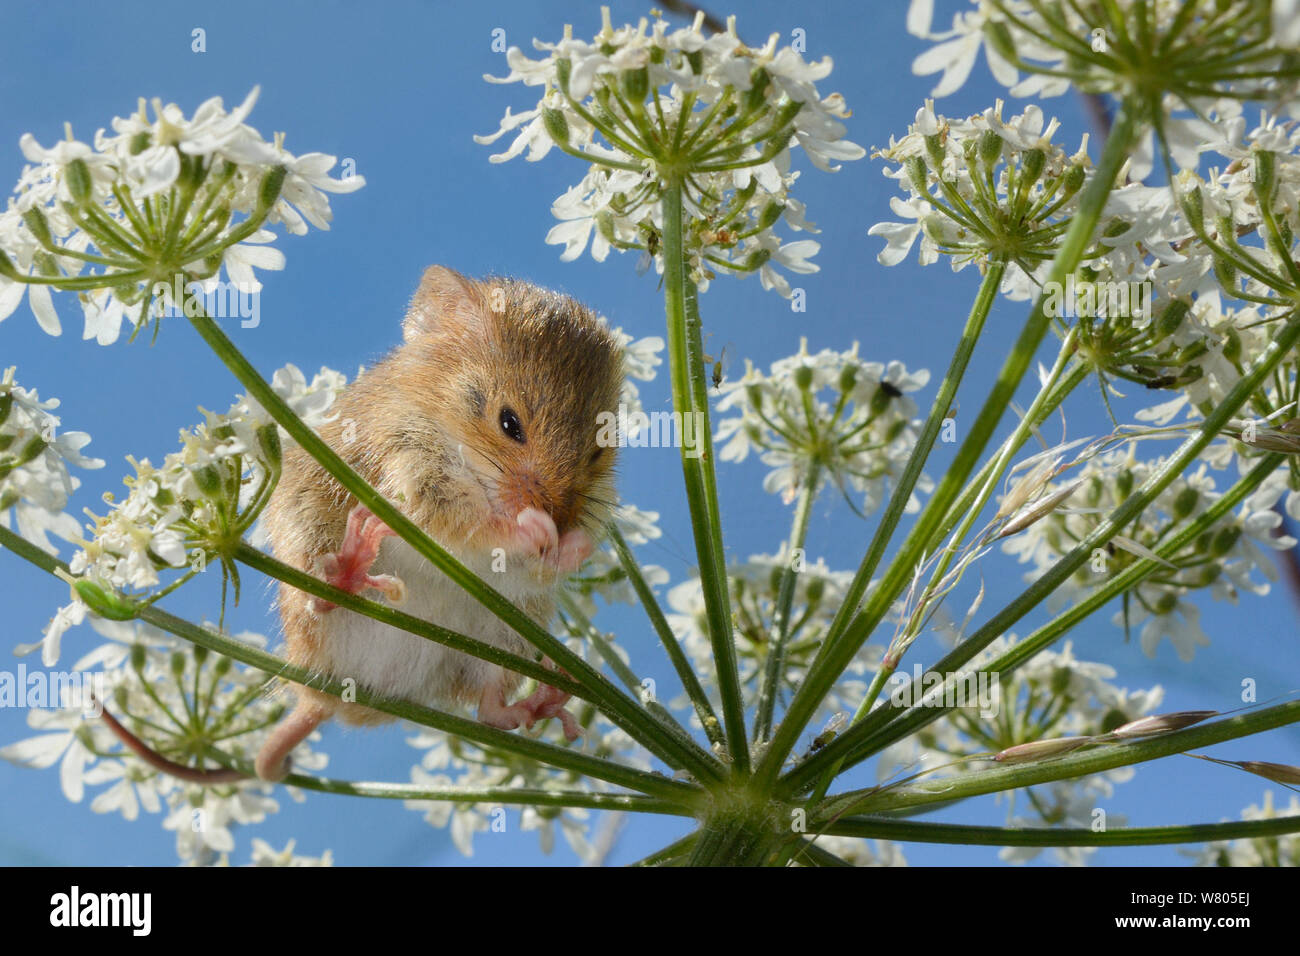 Ratón de cosecha (Micromys minutus) limpiar su nariz en común (Heracleum sphondylium hogweed) flowerhead tras la liberación, Moulton, Northampton, Reino Unido, junio. Modelo liberado. Foto de stock